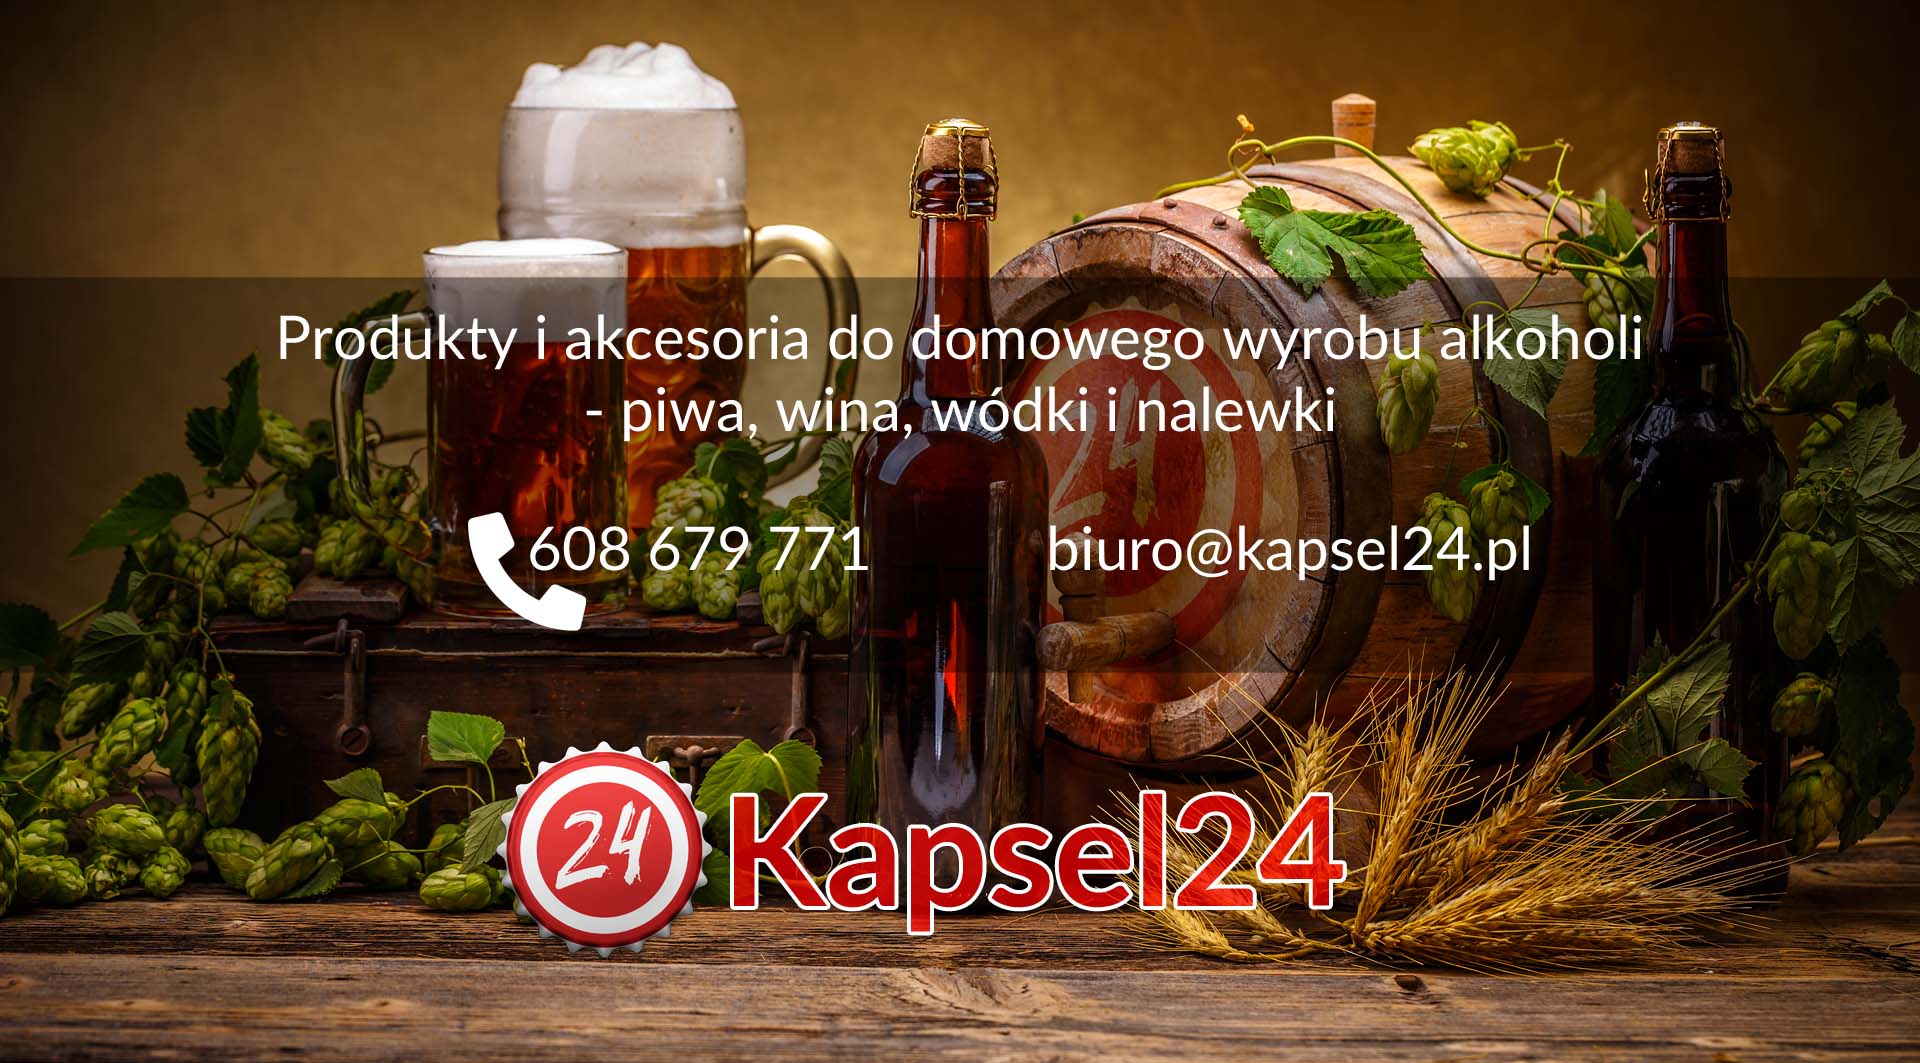 Kapsel24.pl | Produkty i akcesoria do domowego wyrobu alkoholi